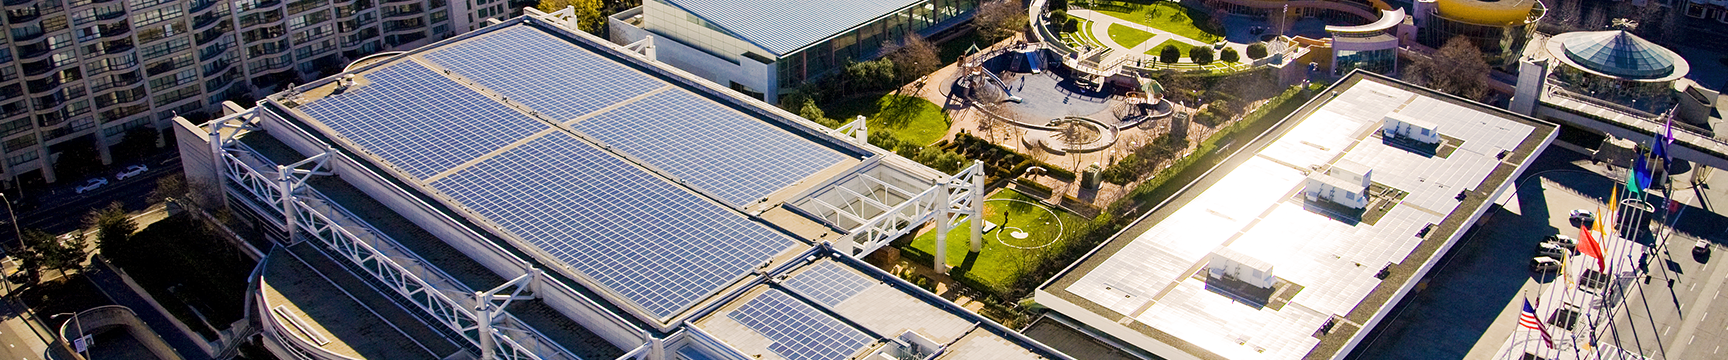 舊金山莫斯康中心太陽能電池板的航拍照片。